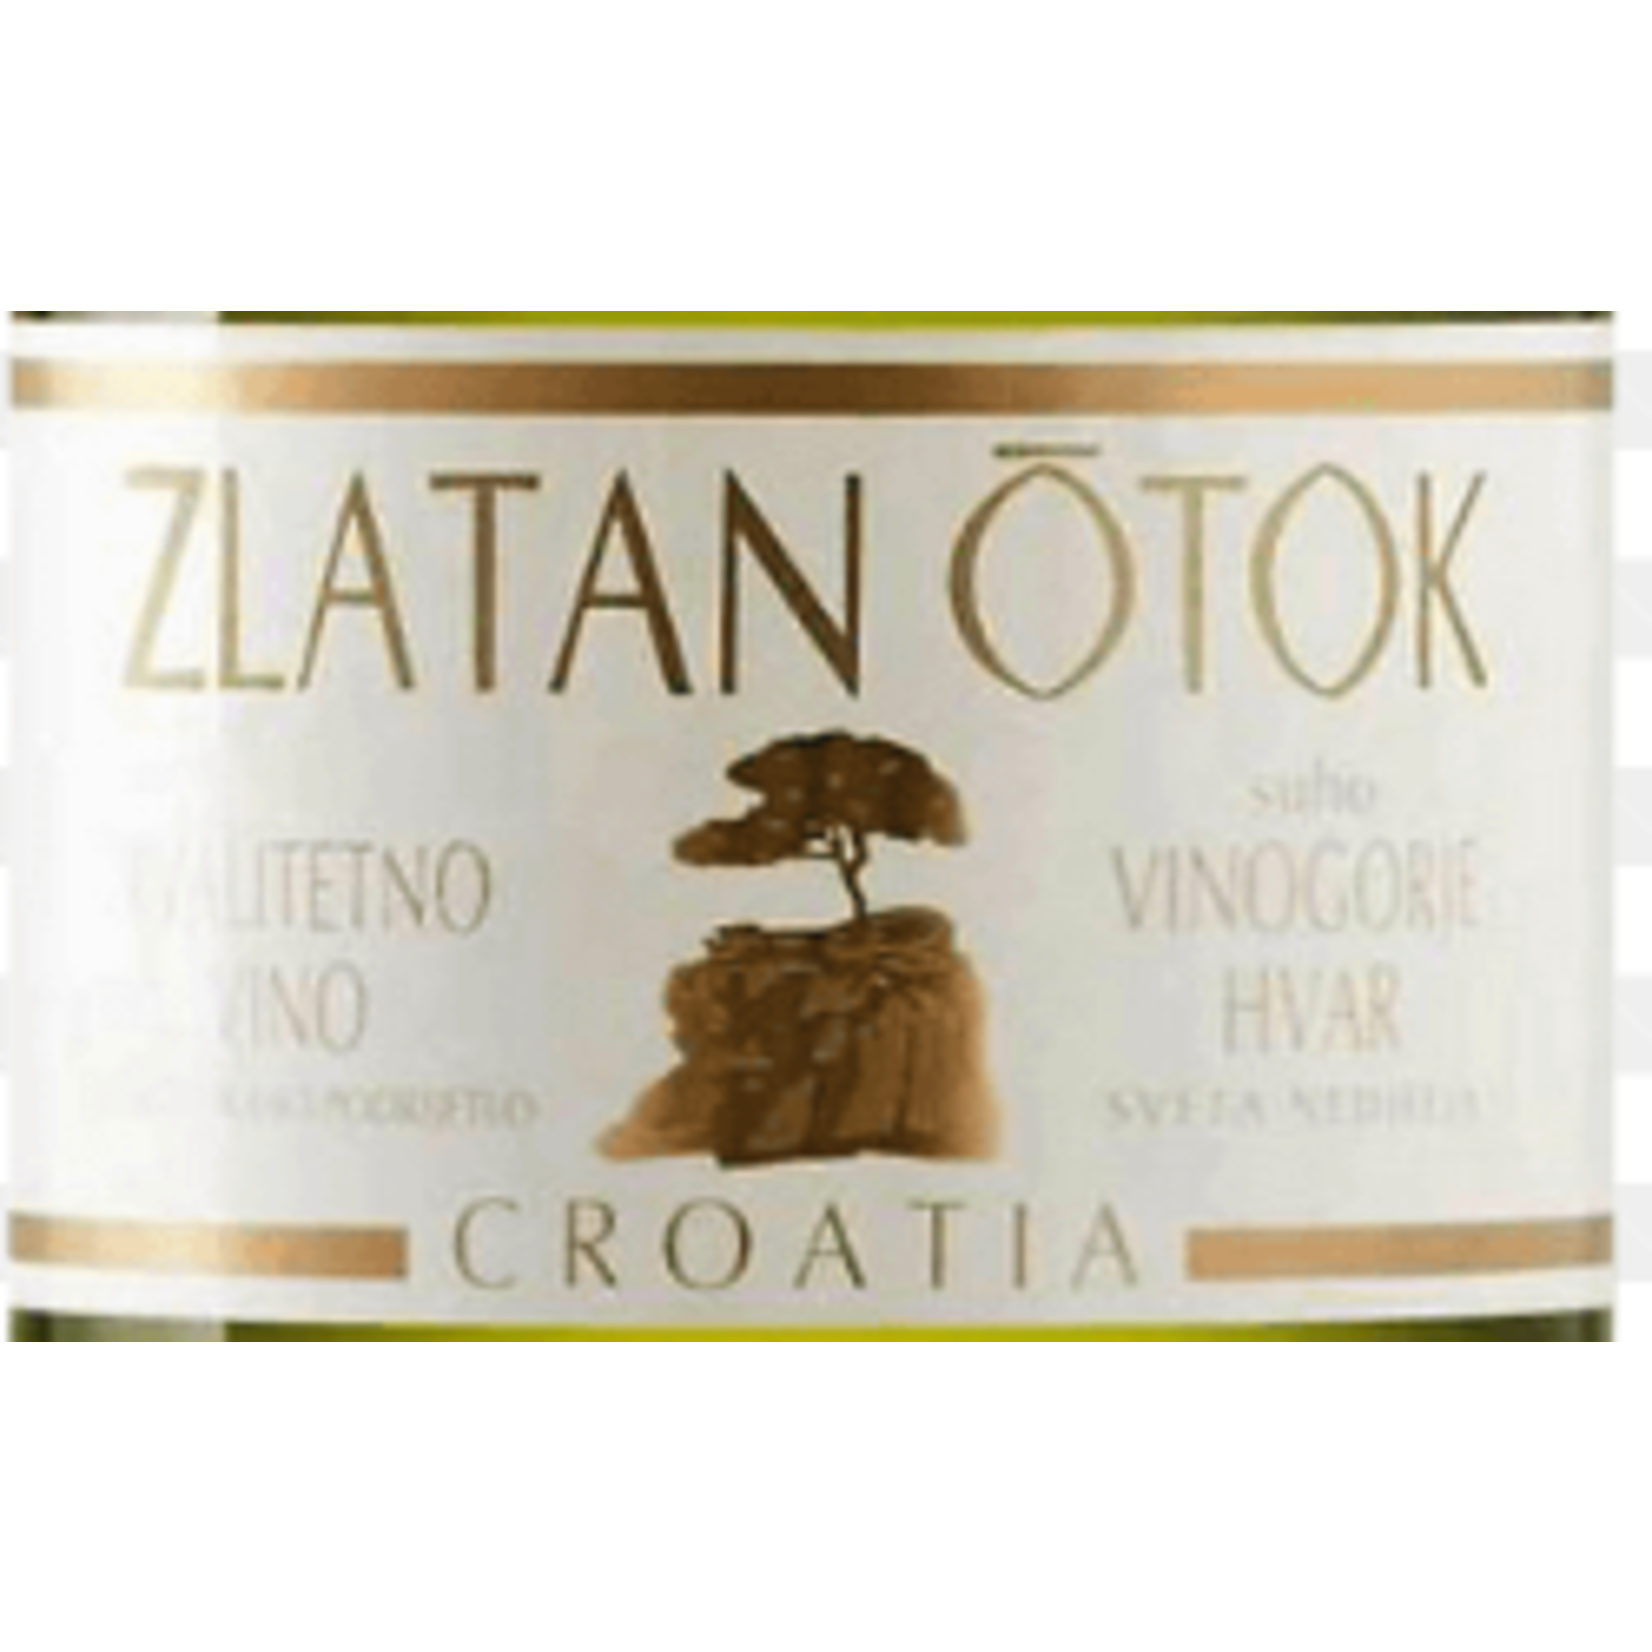 Zaltan Otok Winery Zlatan Otok Croatia